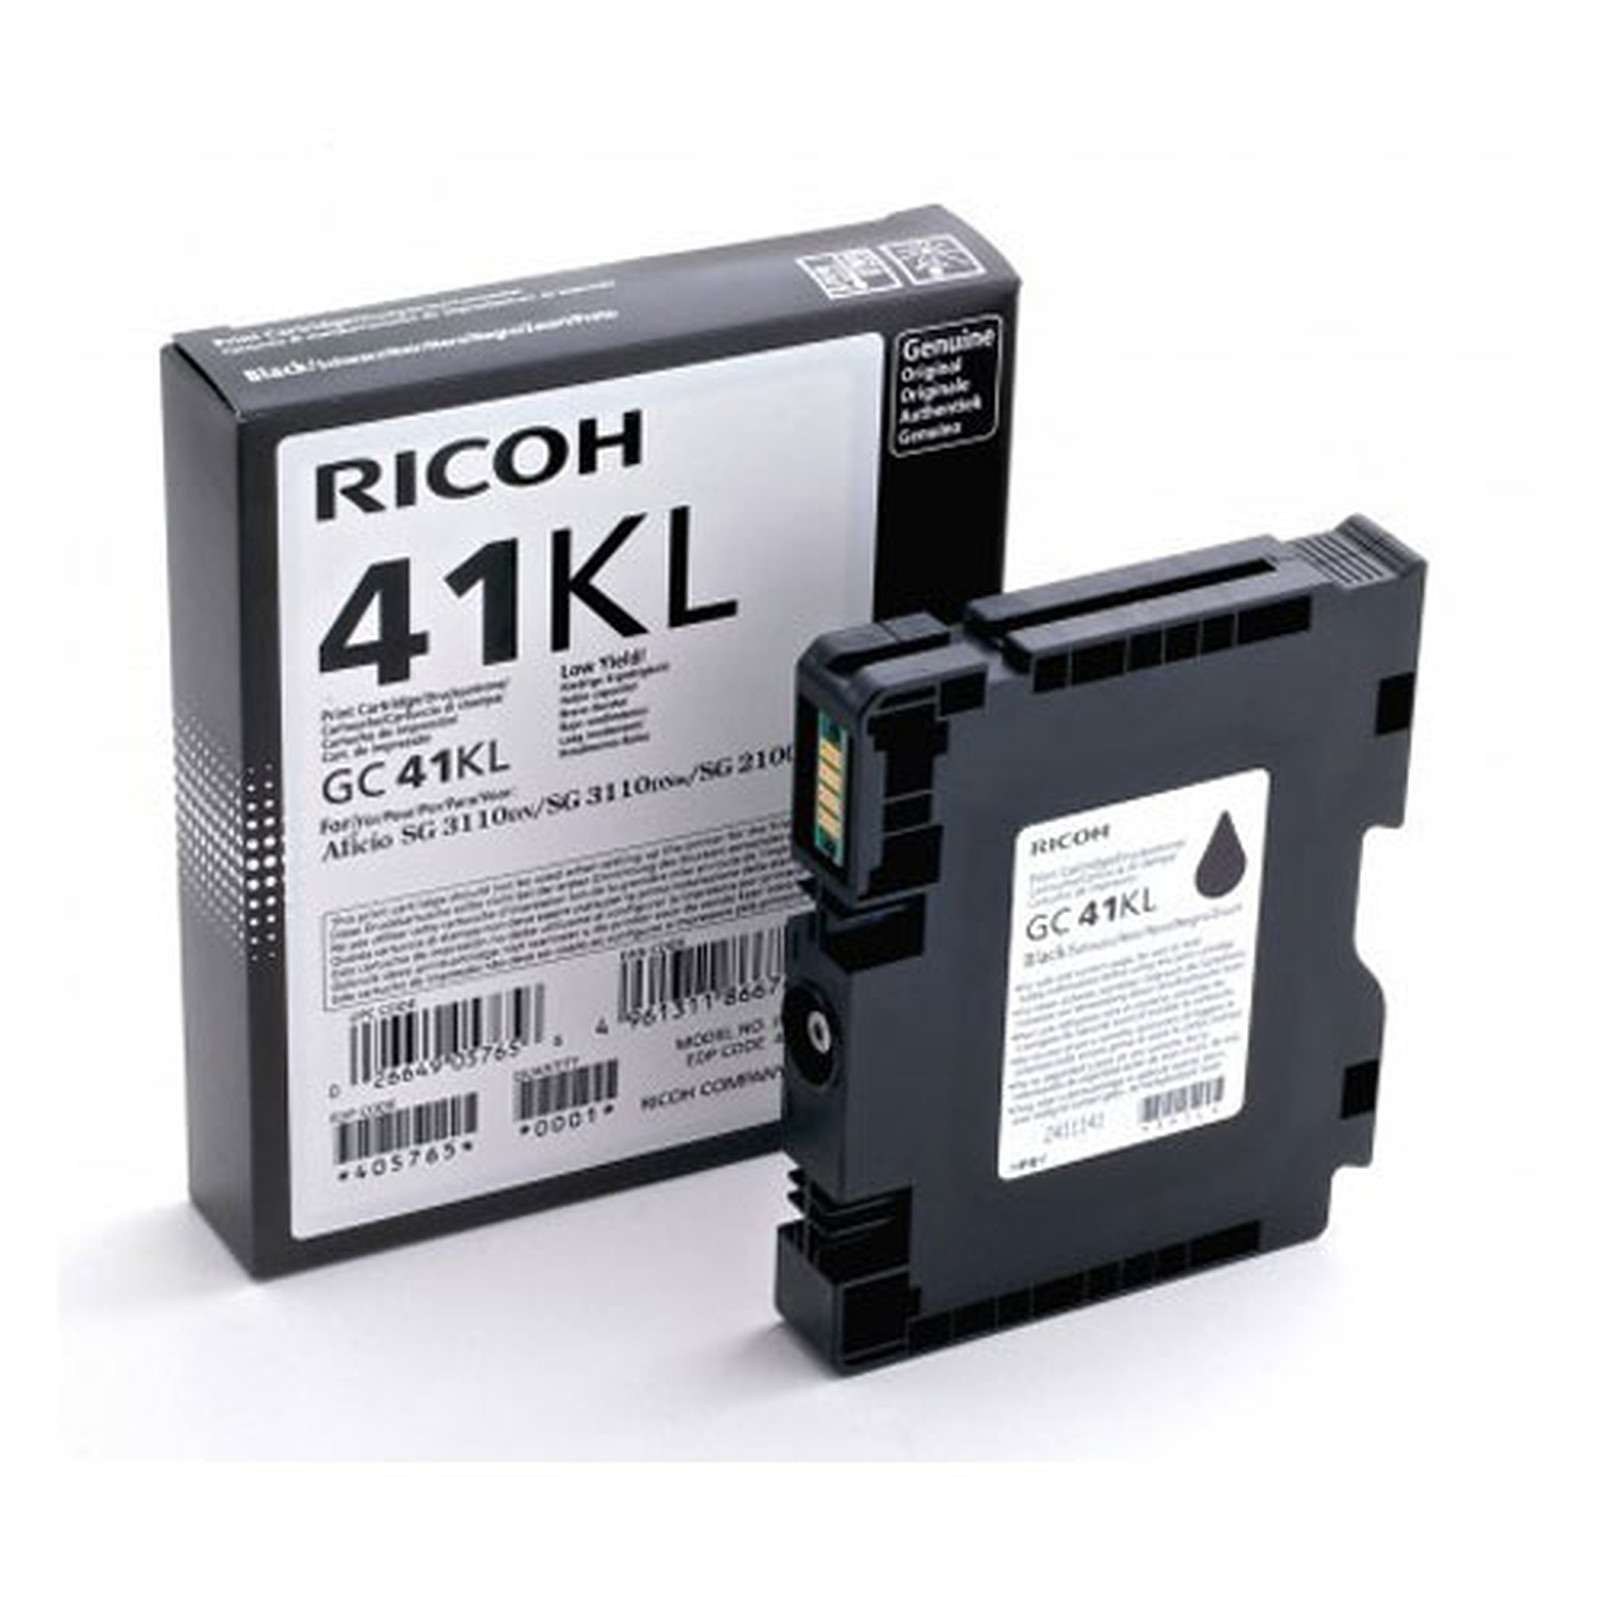 Ricoh GC41KL Noir - 405765 - Cartouche imprimante Ricoh